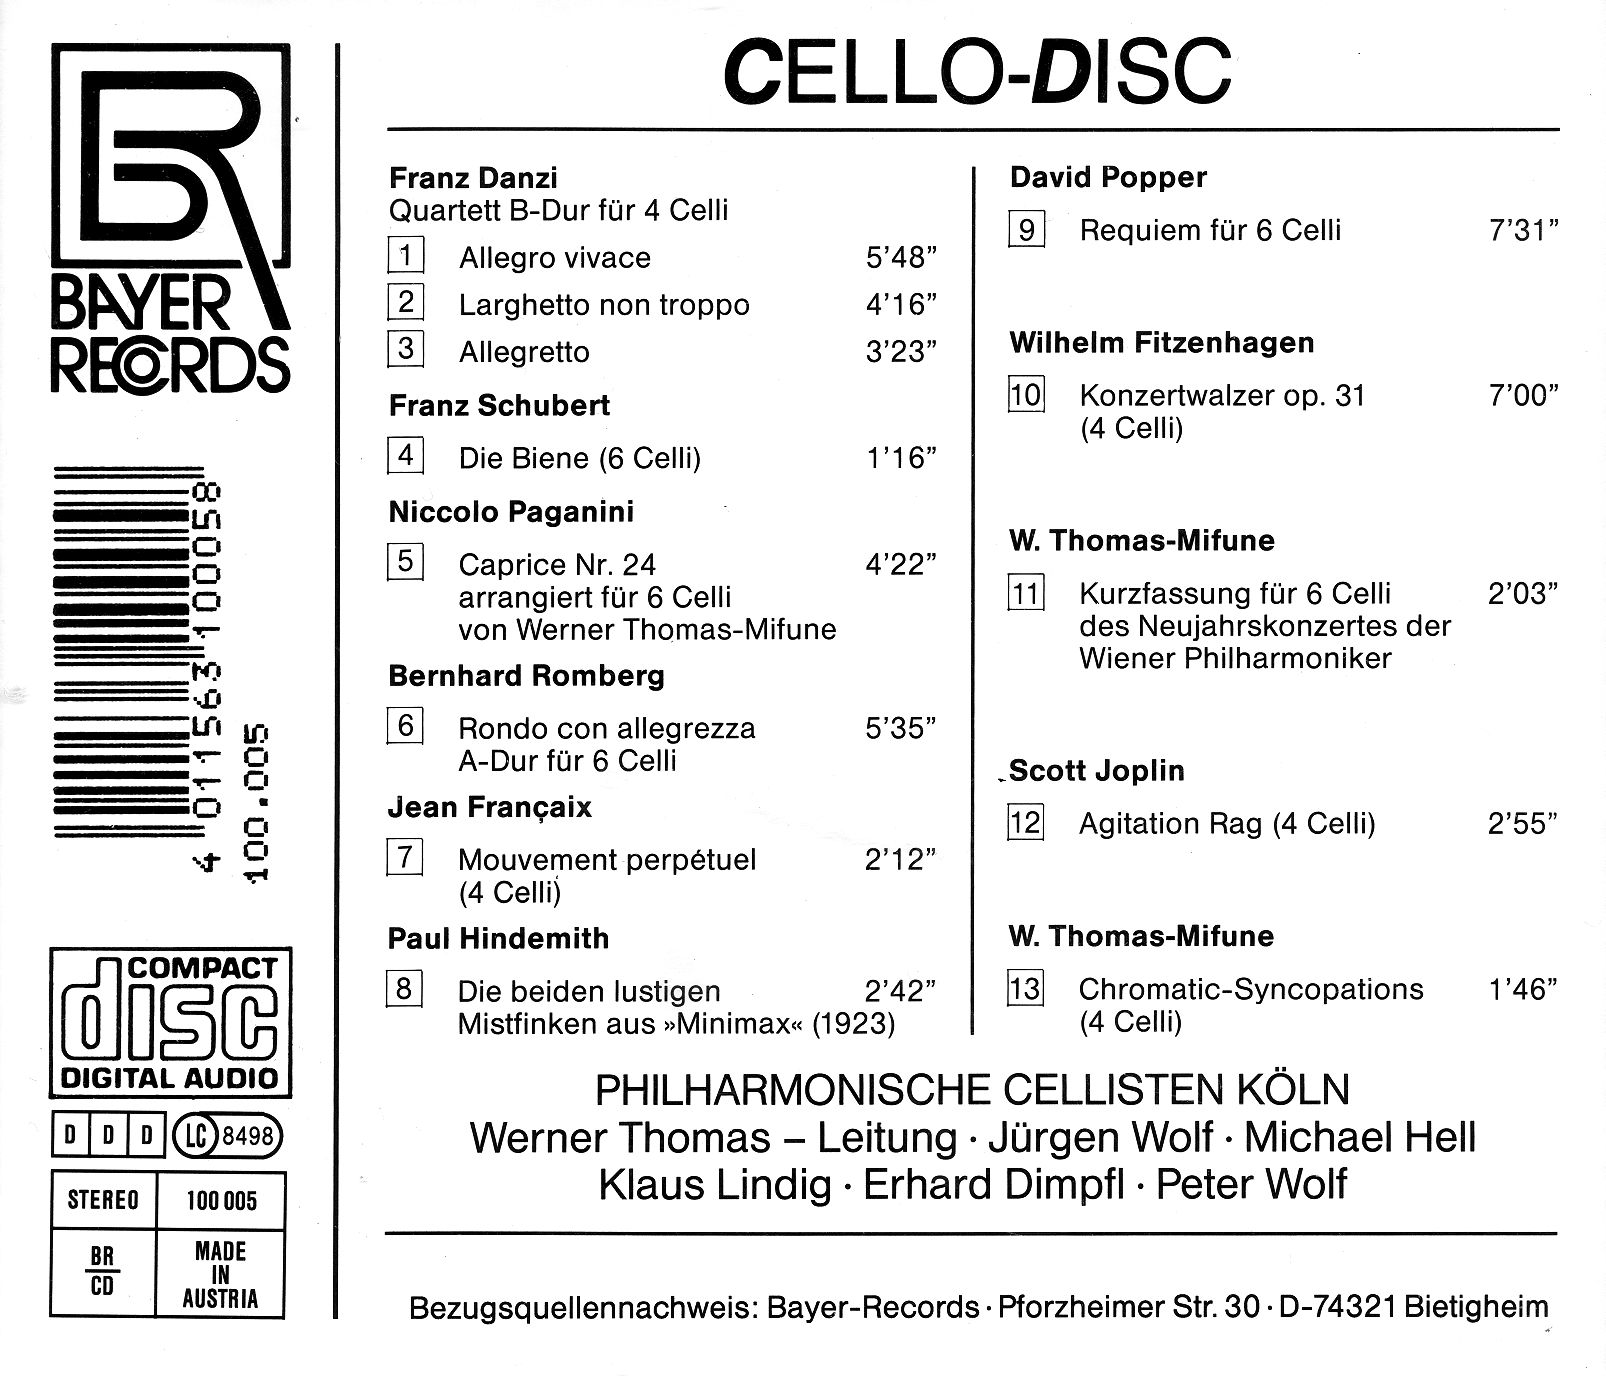 Cello-Disc